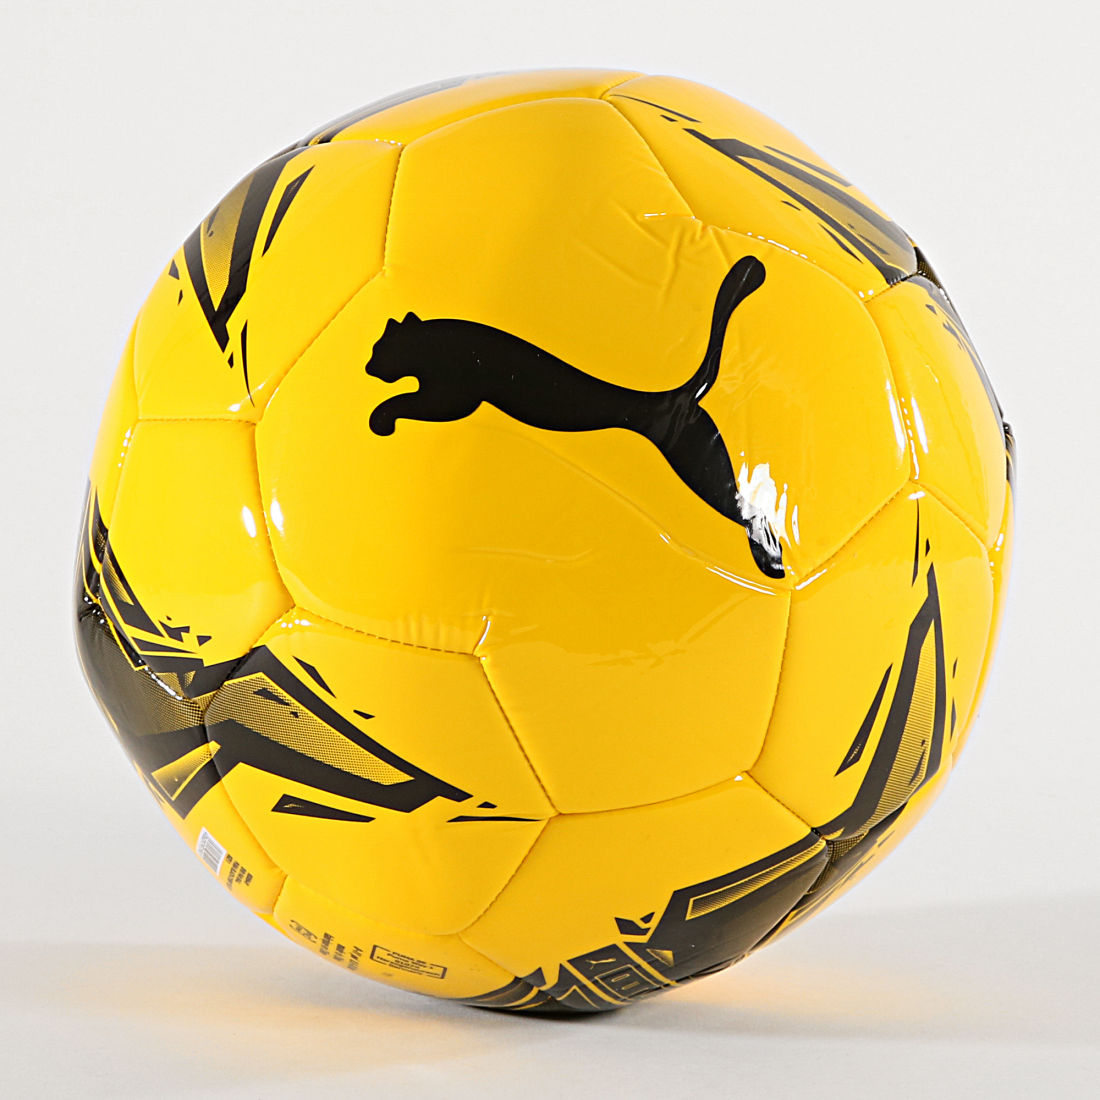 Ballon Dortmund